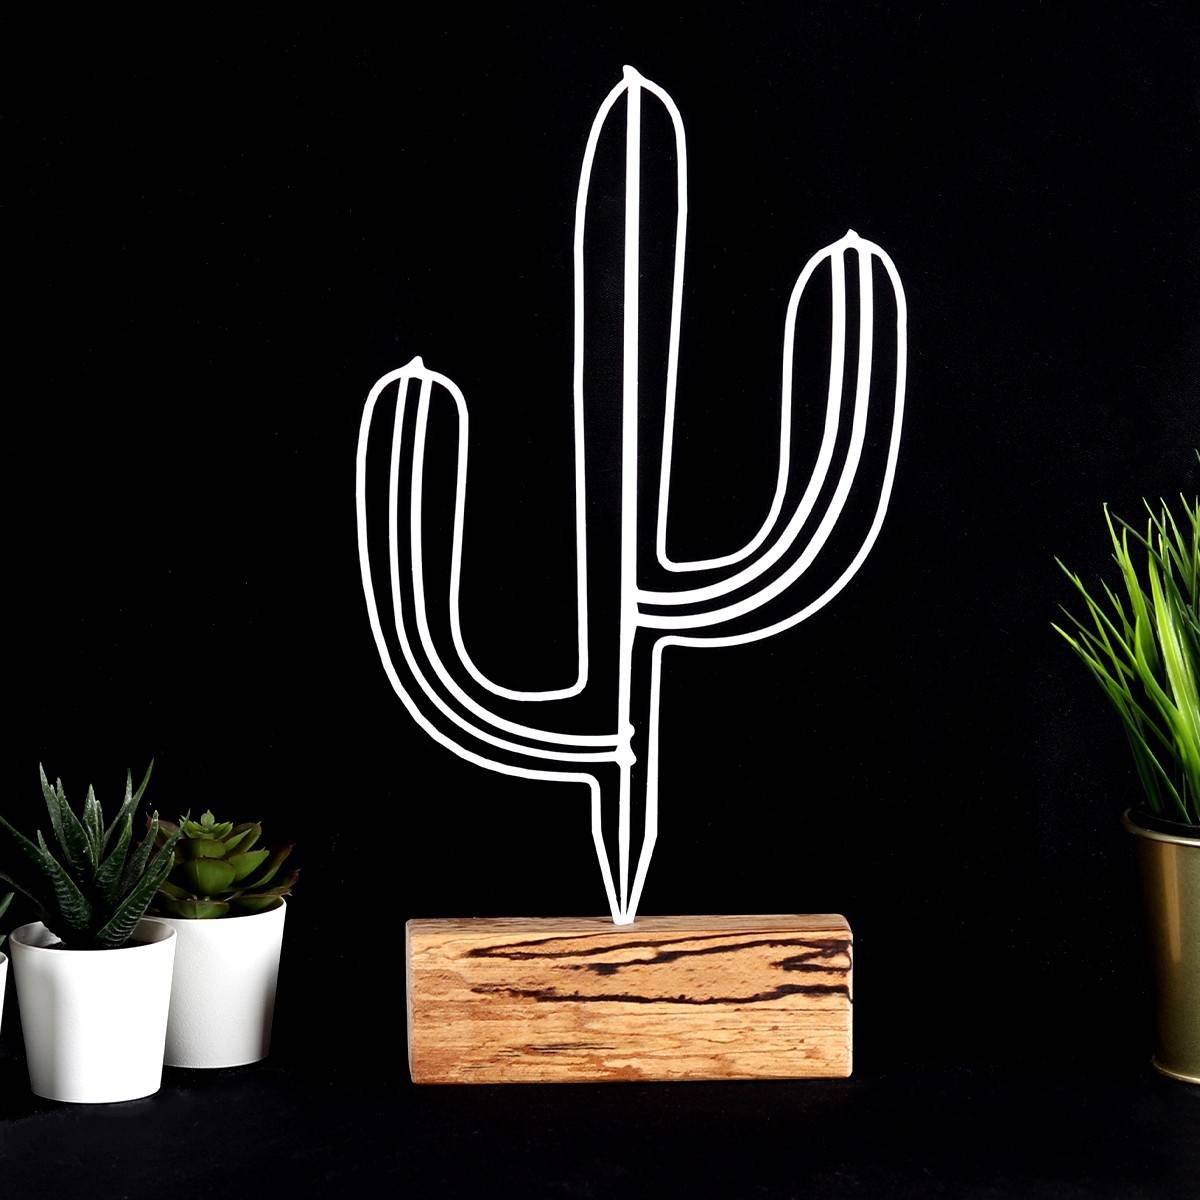 Objet décoratif à poser Approbatio cactus Saguaro 37cm Métal Blanc Socle Bois